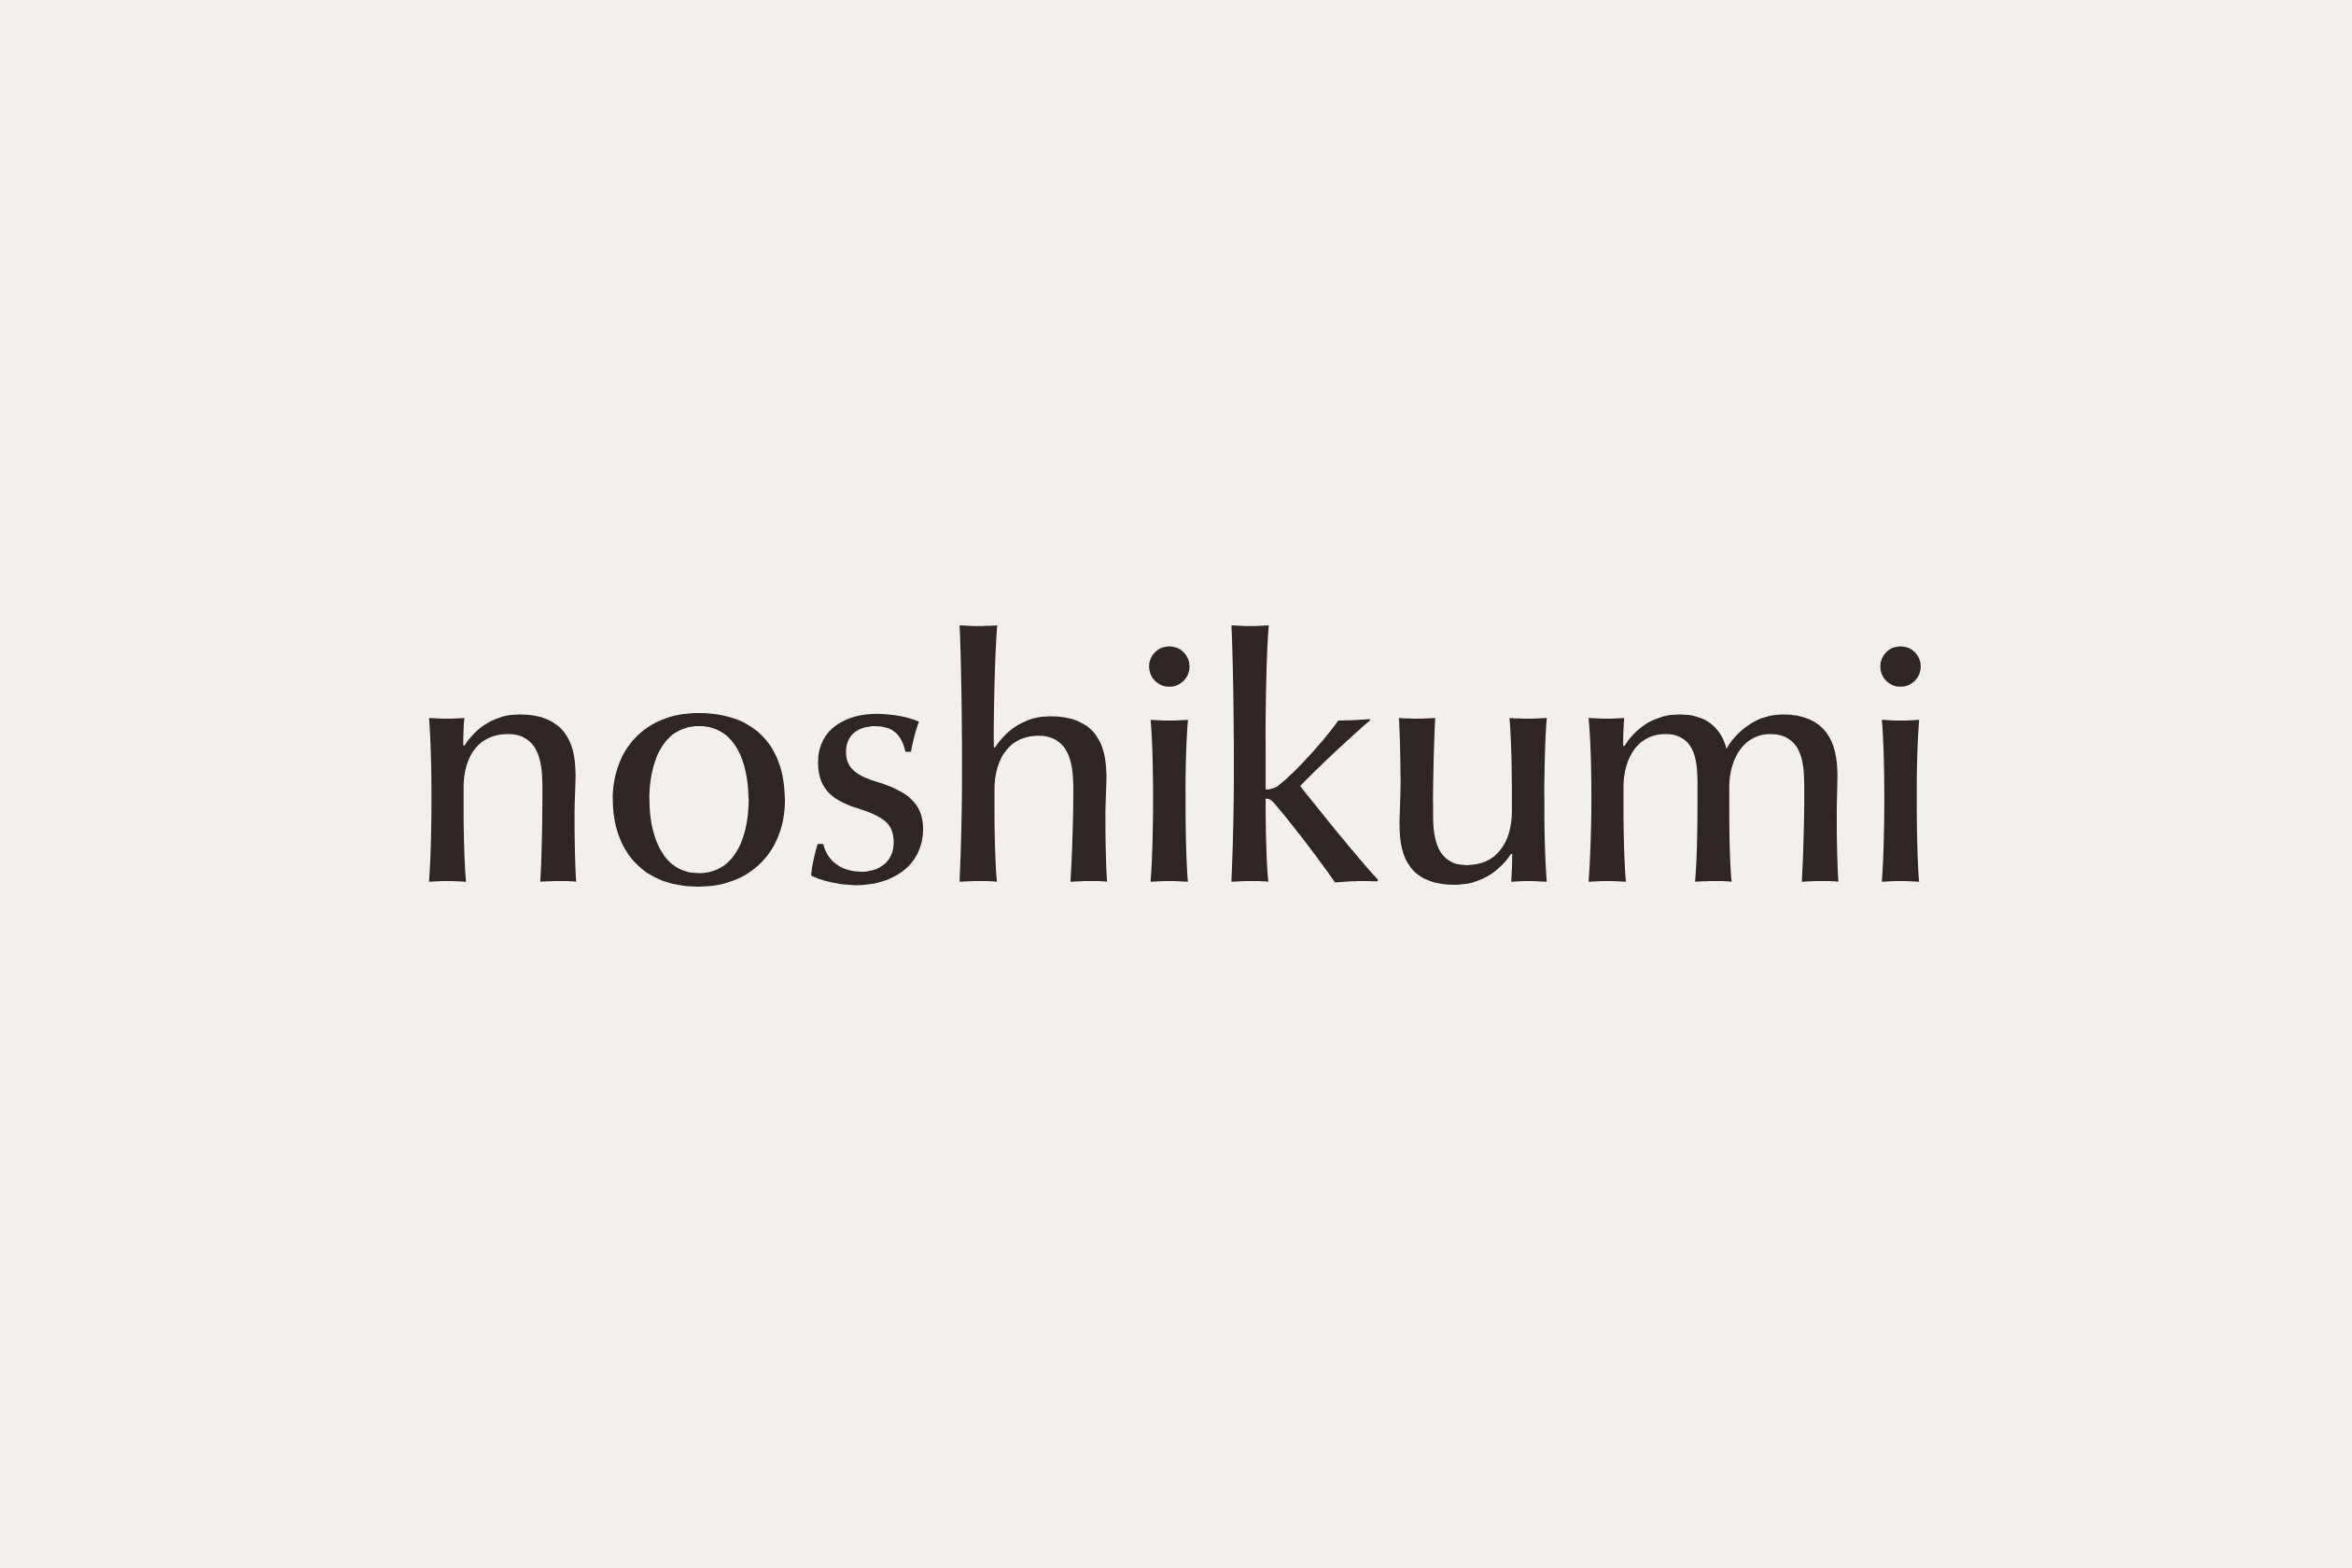 「noshikumi」ロゴタイプのデザイン画像